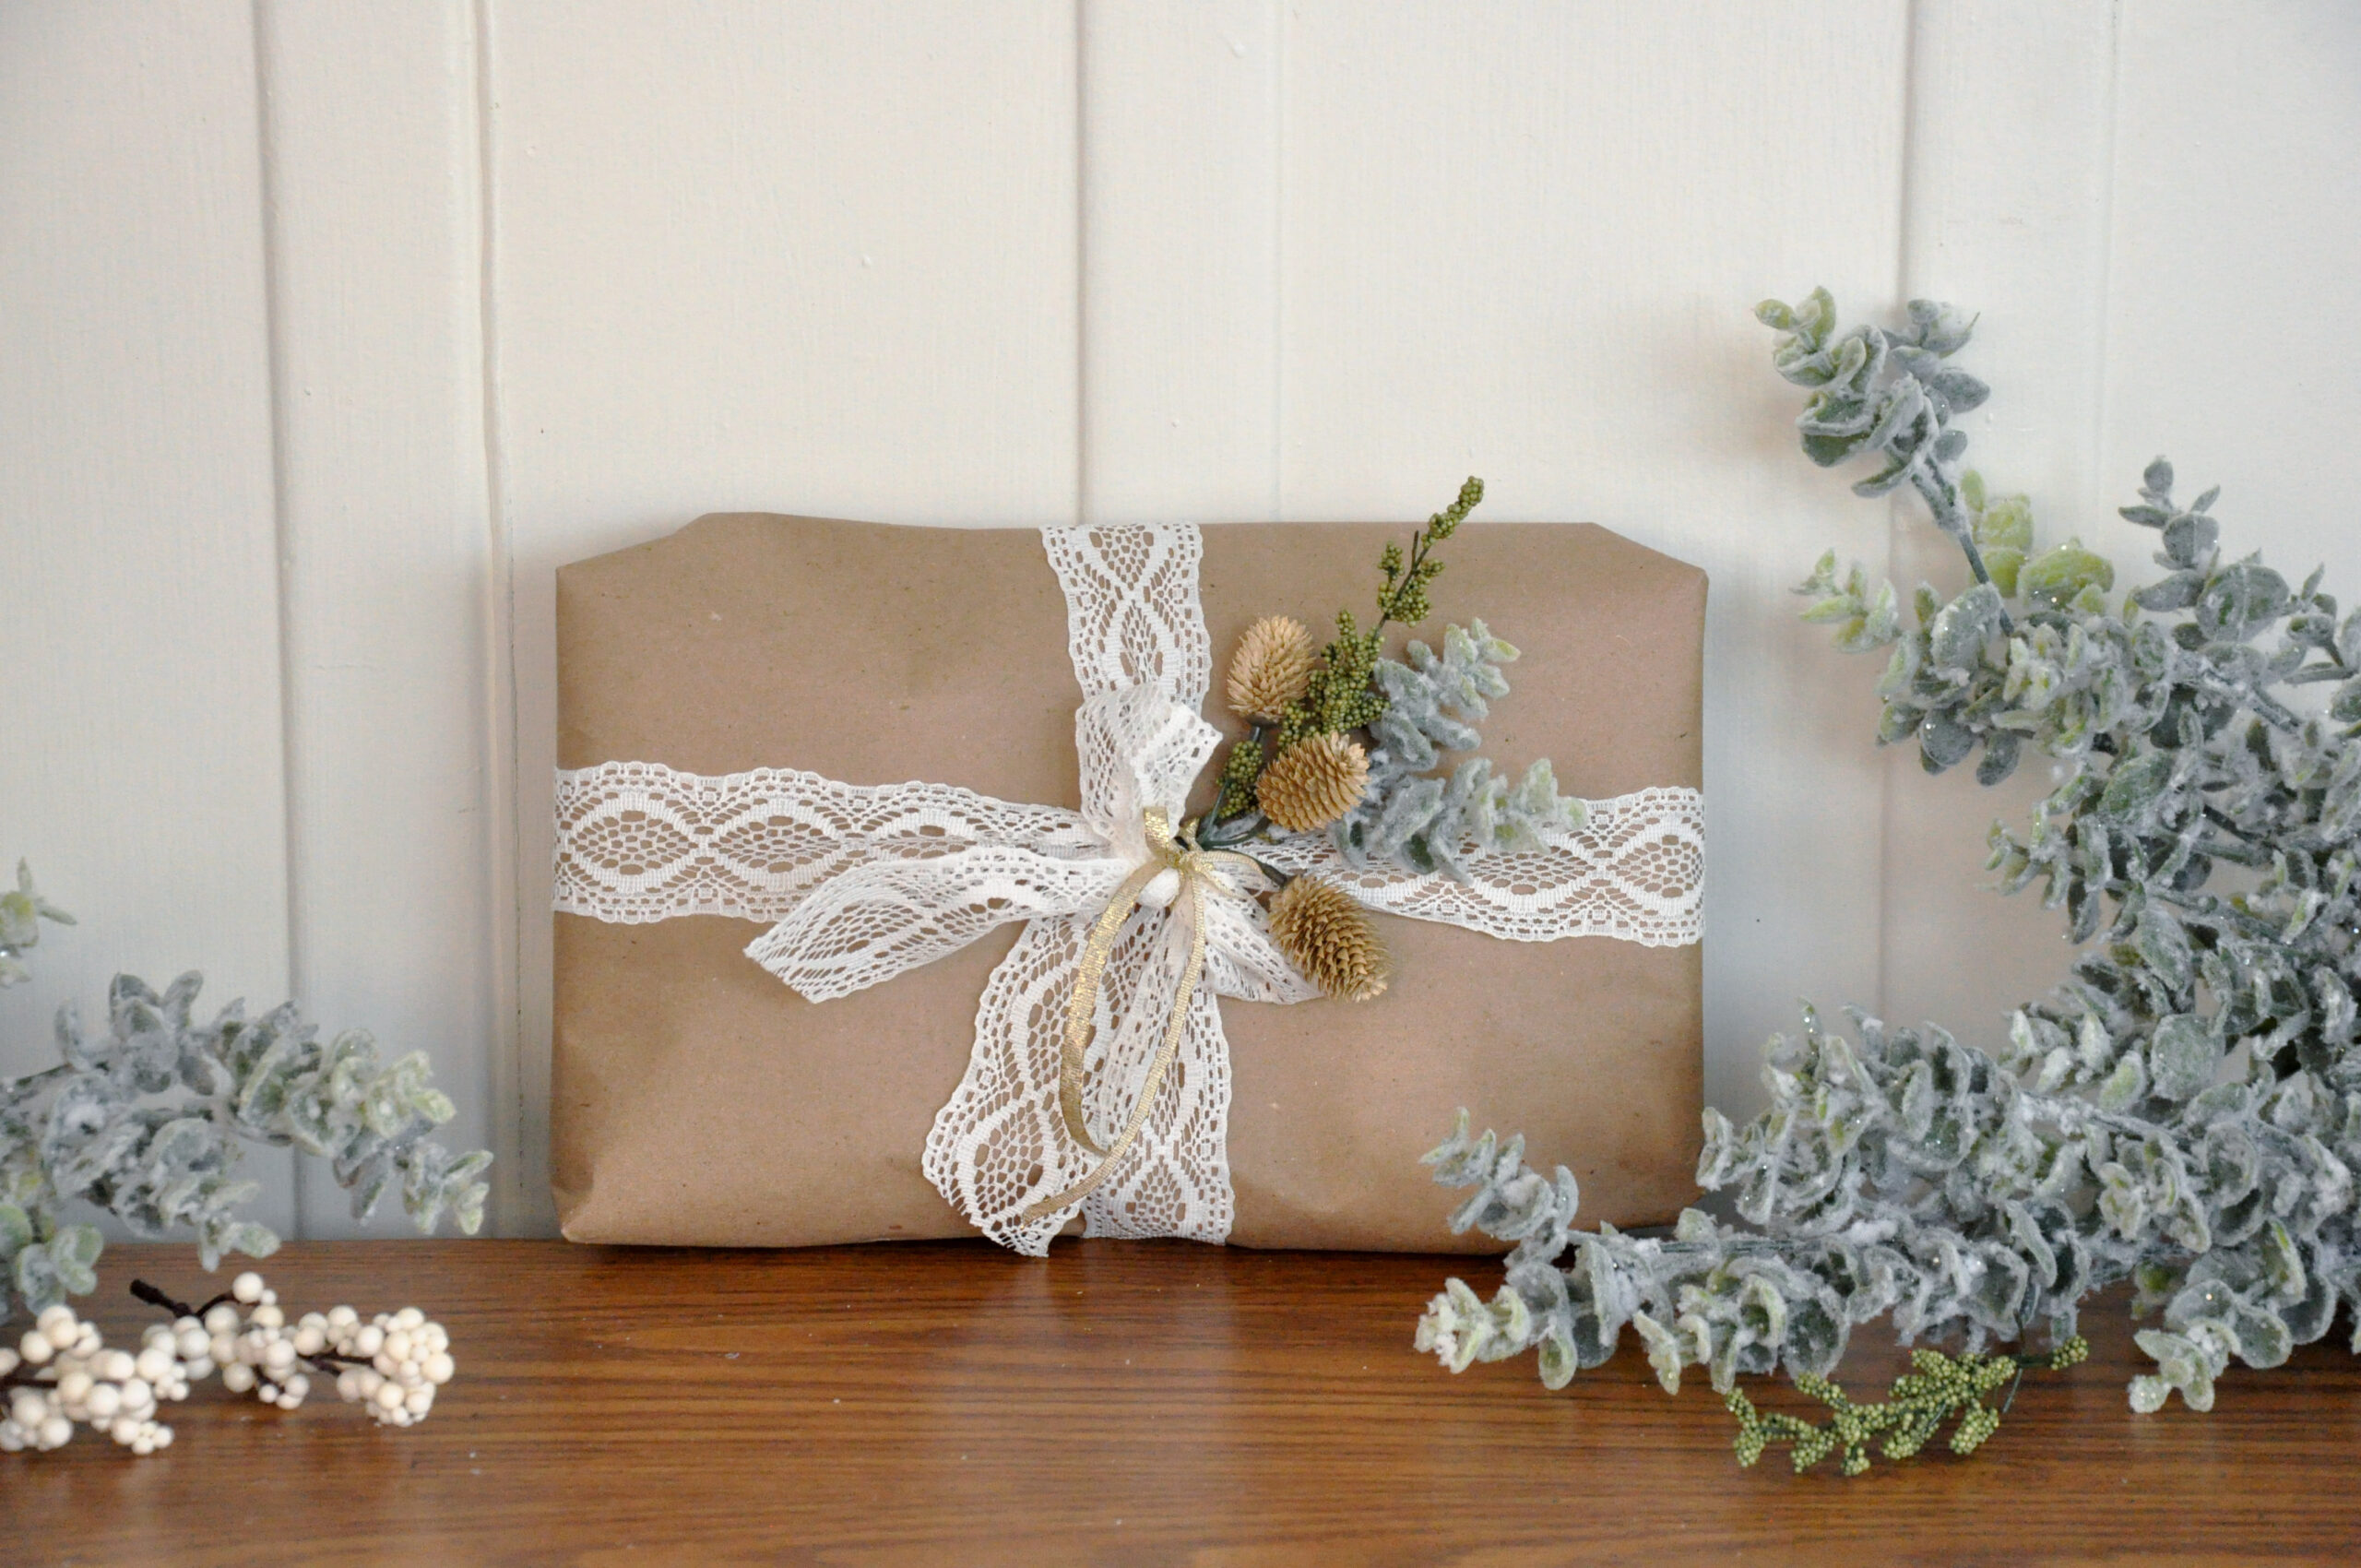 Gift Wrapping Ideas Creative Box | DIY Circular Gift Wrapping Tutorial |  Easy Gift Packing Ideas Box - YouTube